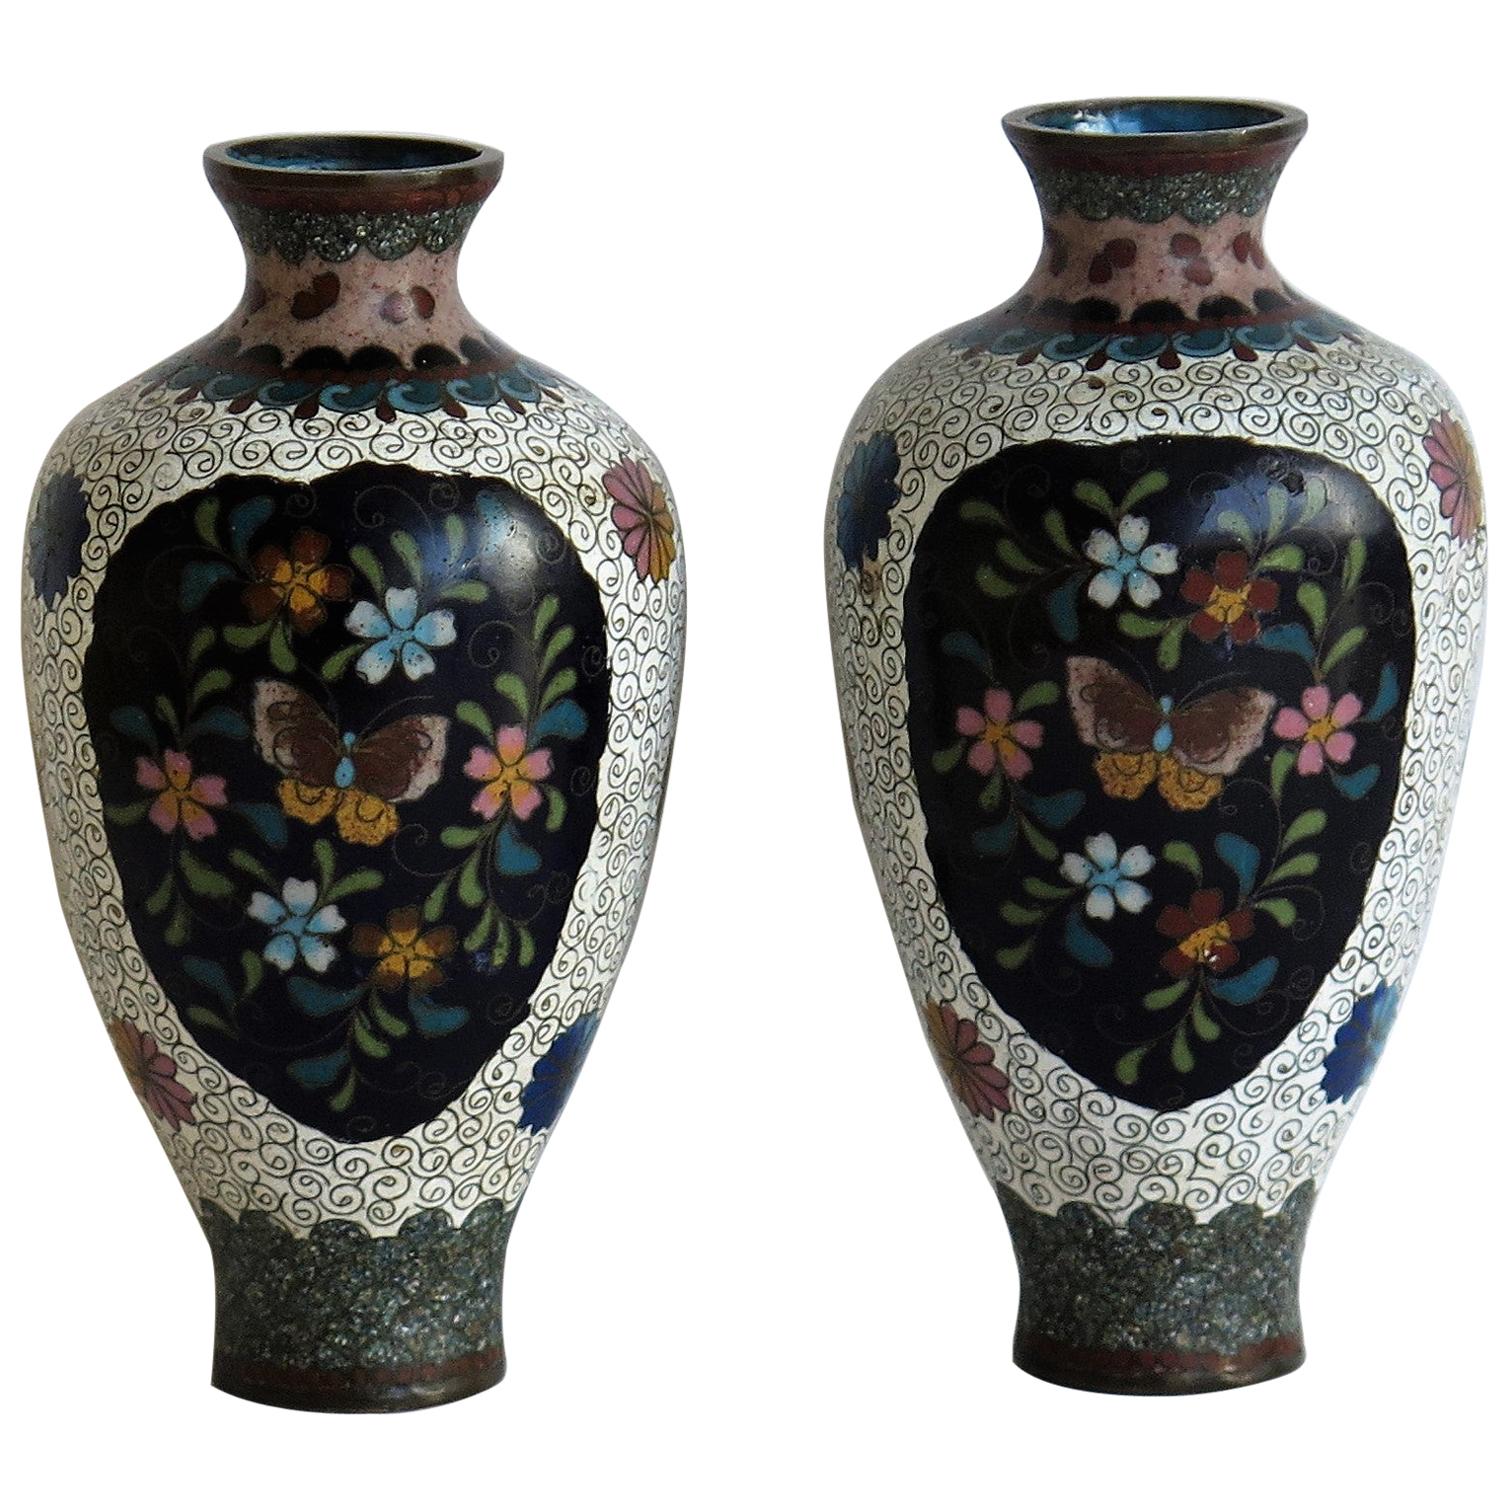 Japanese Cloisonné Vases Butterflies & Flowers, 19th Century Meiji Period, Pair